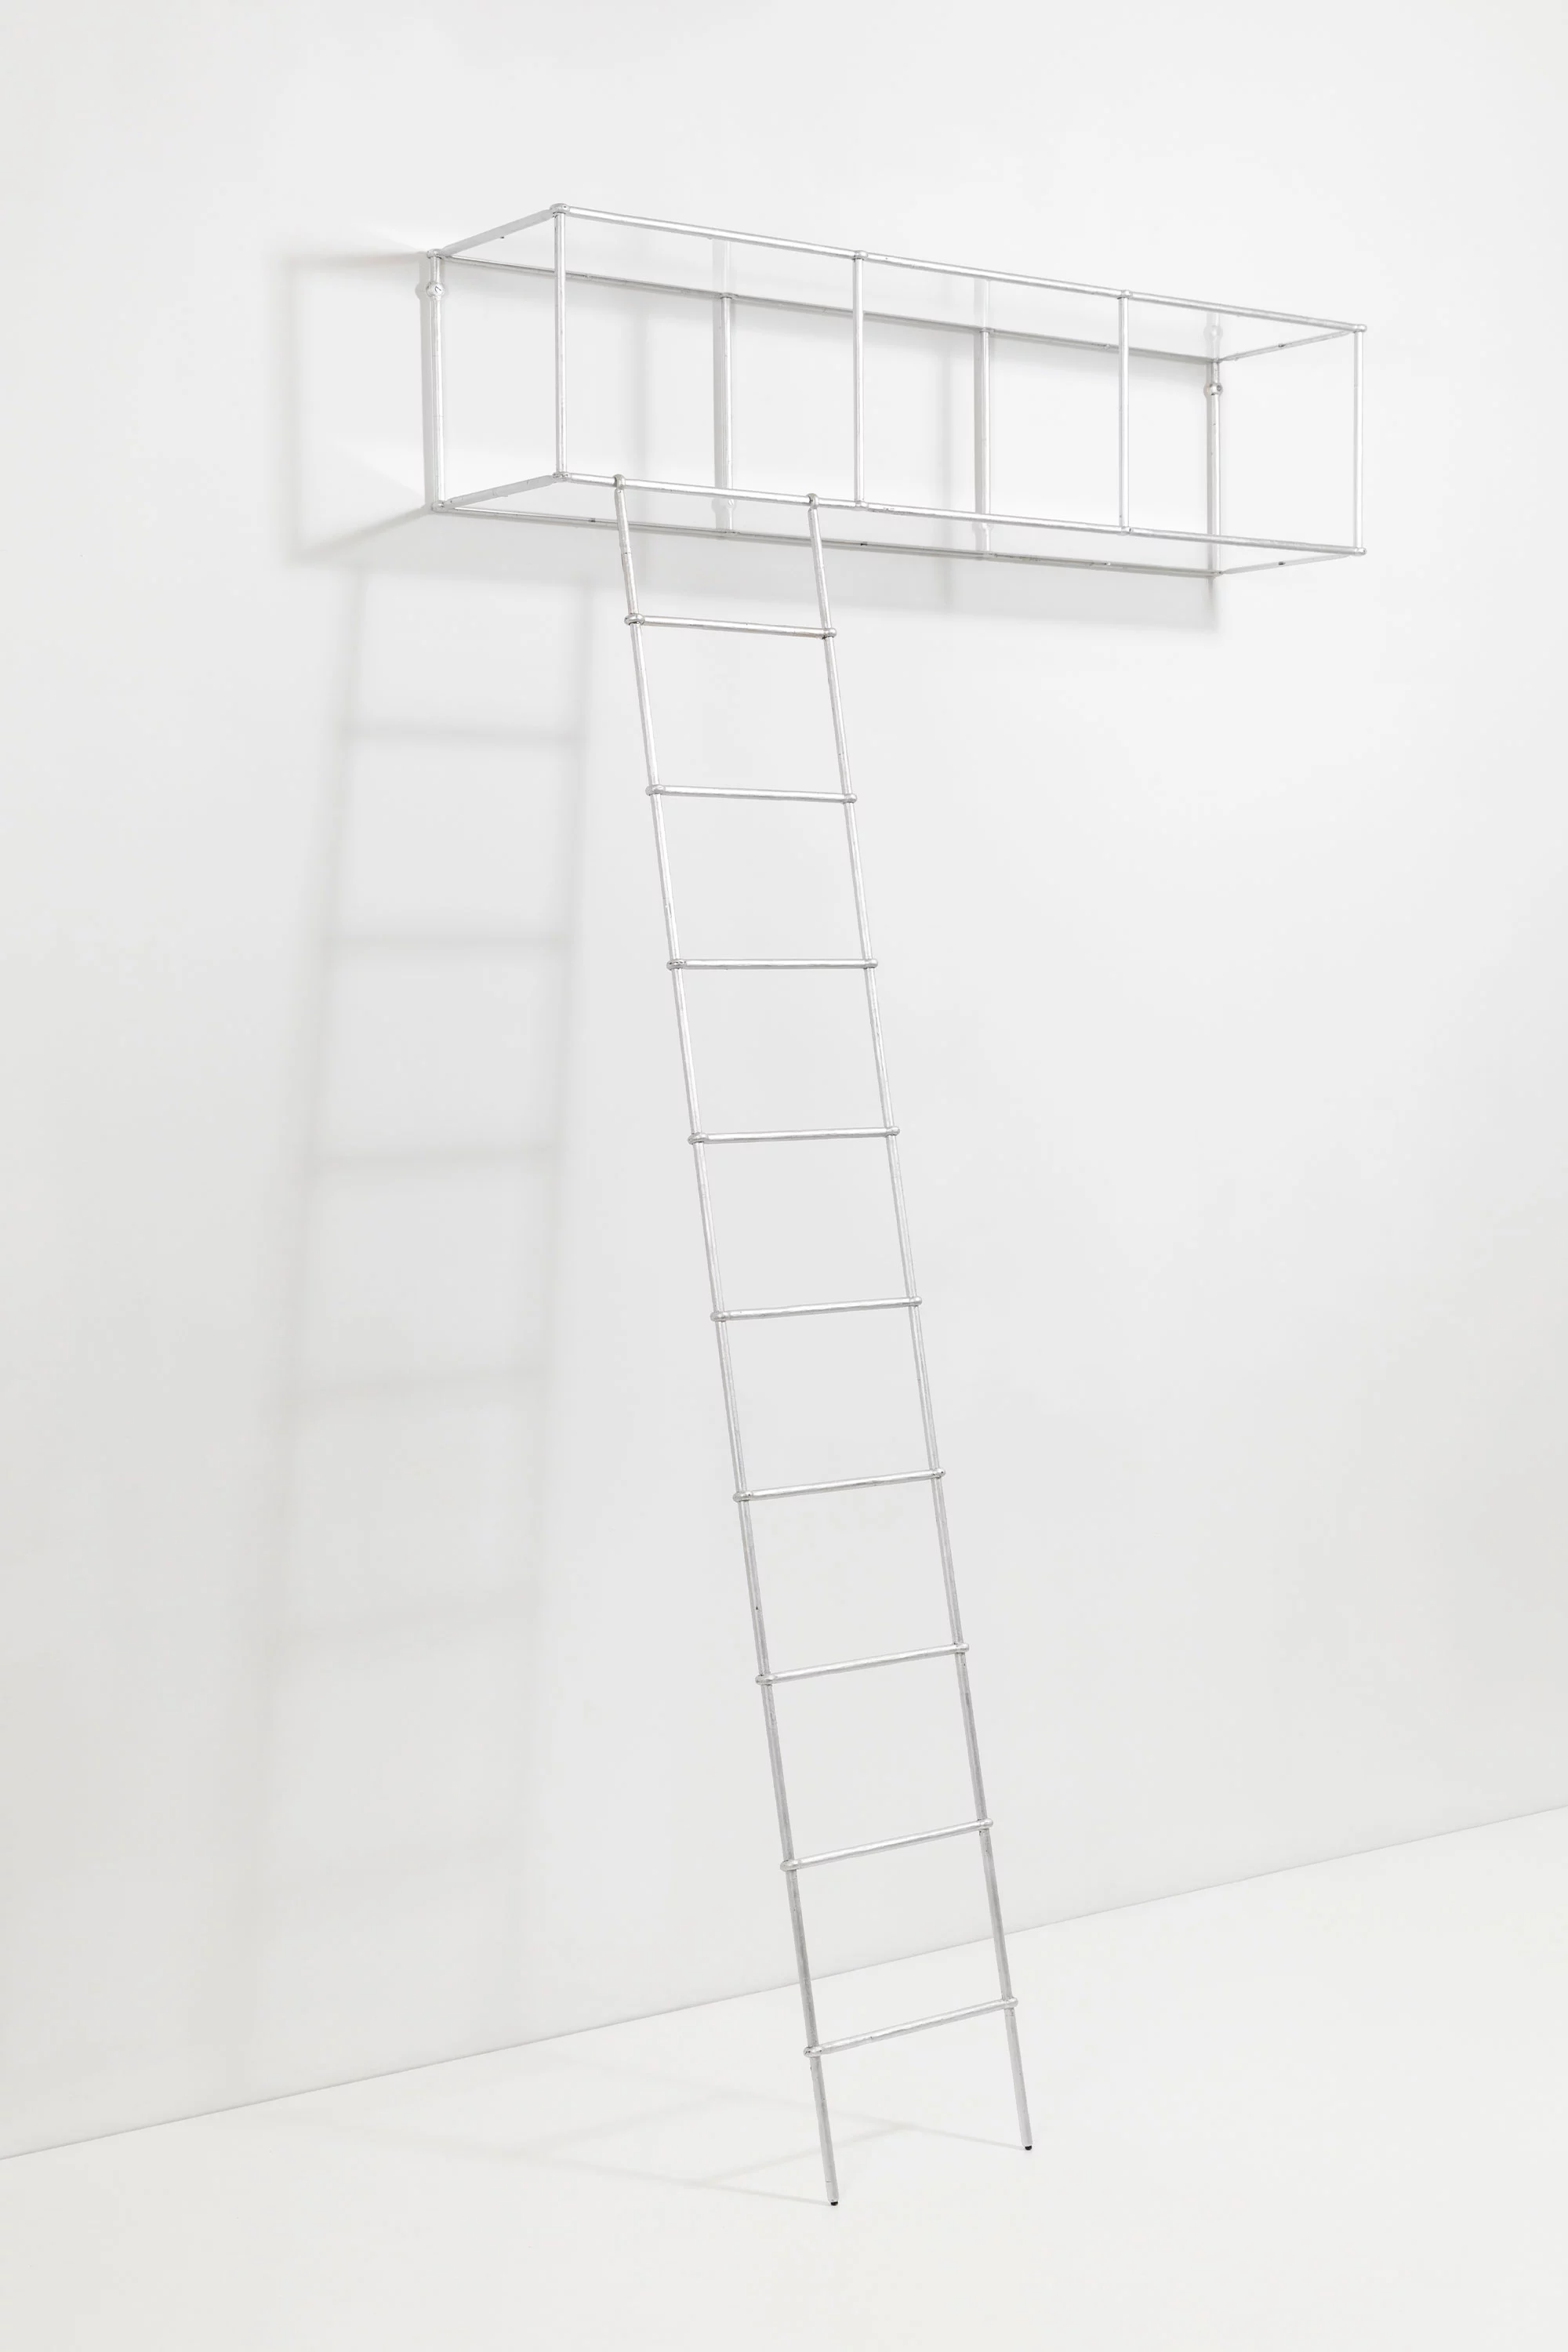 Ciel wall-shelf 1 - Ronan & Erwan Bouroullec - Miscellaneous - Galerie kreo